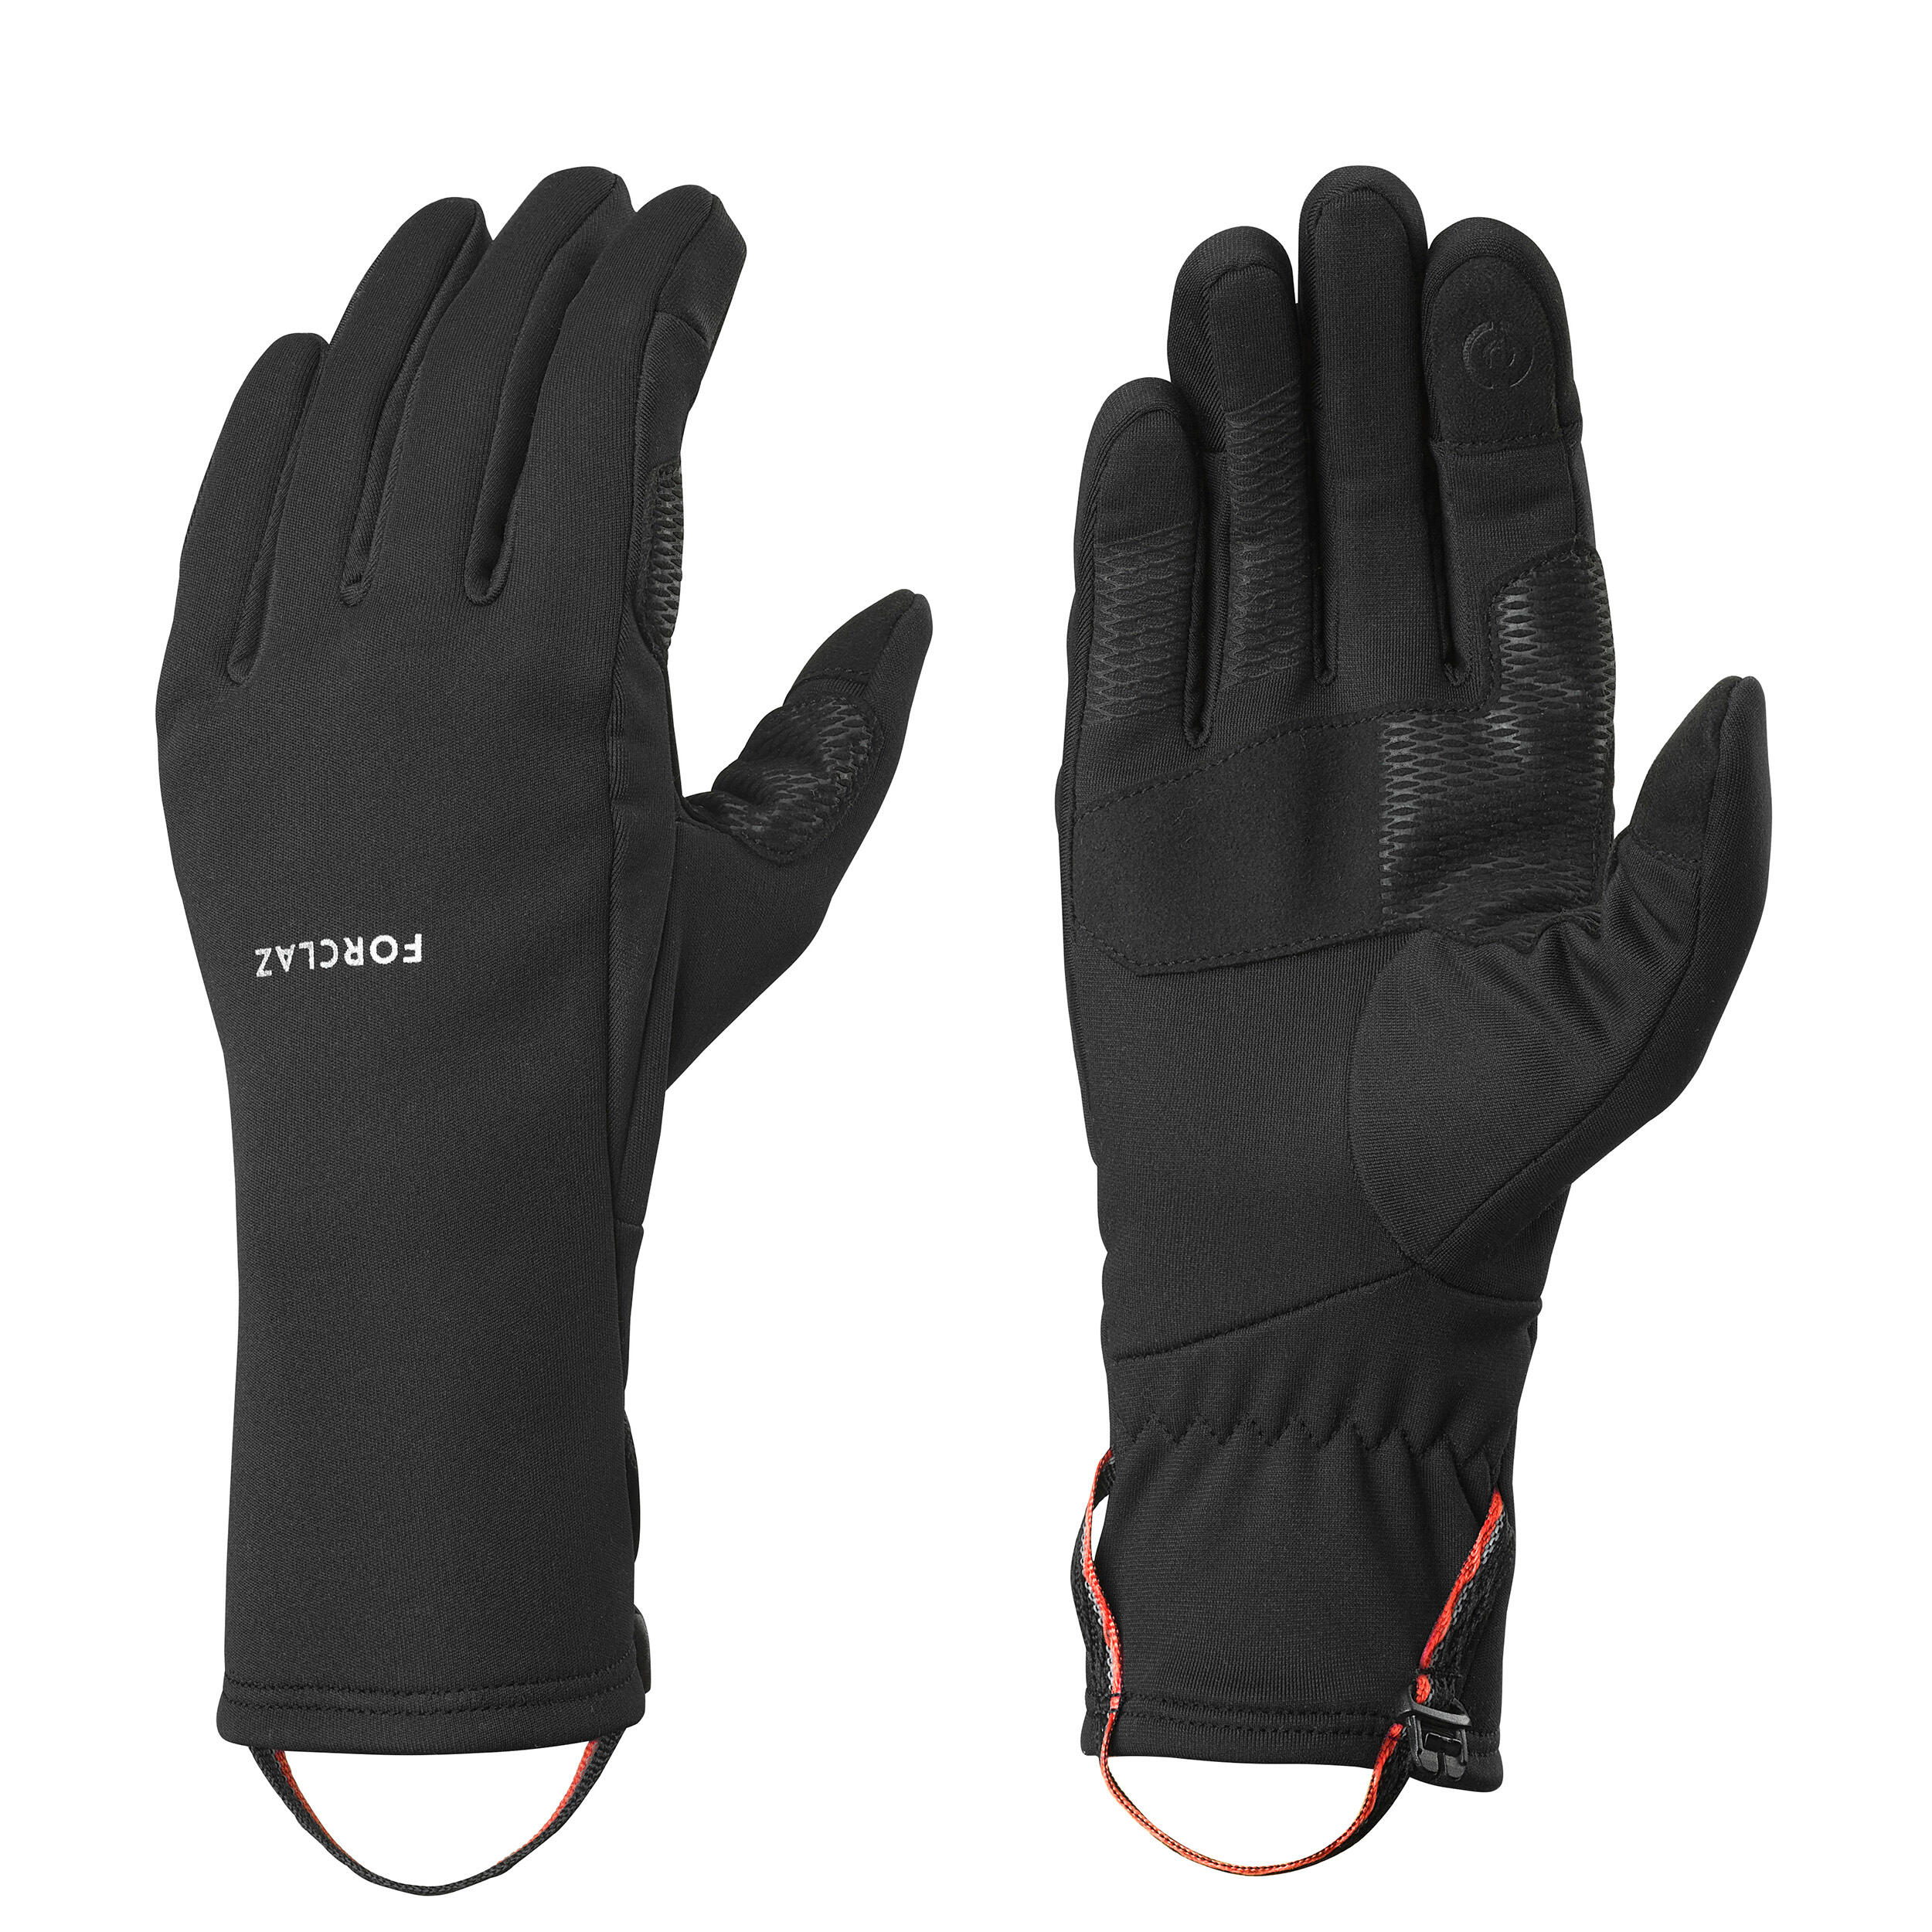 Men's Trekking Gloves